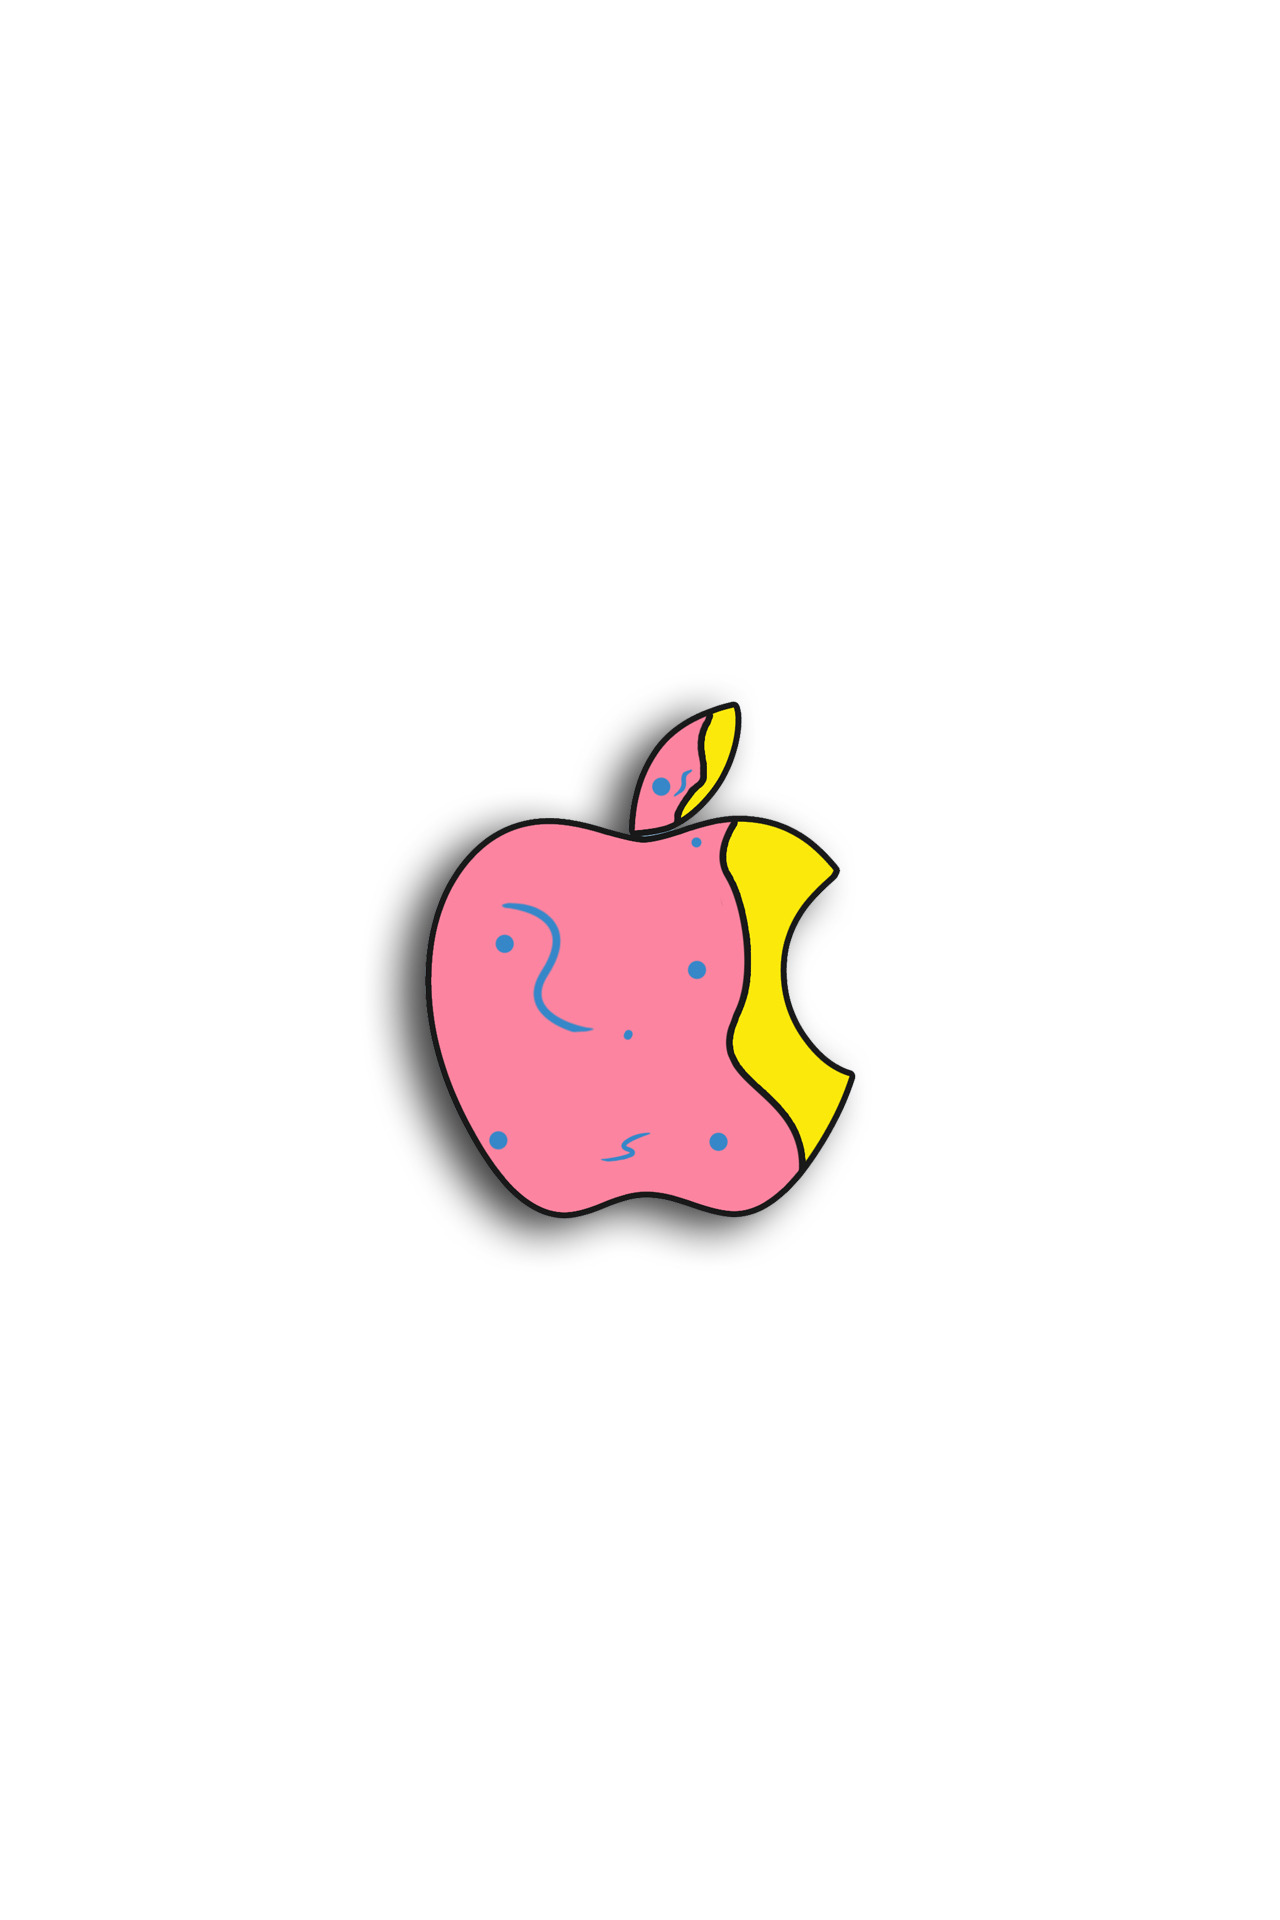 女の子向け お洒落可愛い Appleアップル ロゴ Iphone Android スマホ壁紙 素材 Naver まとめ